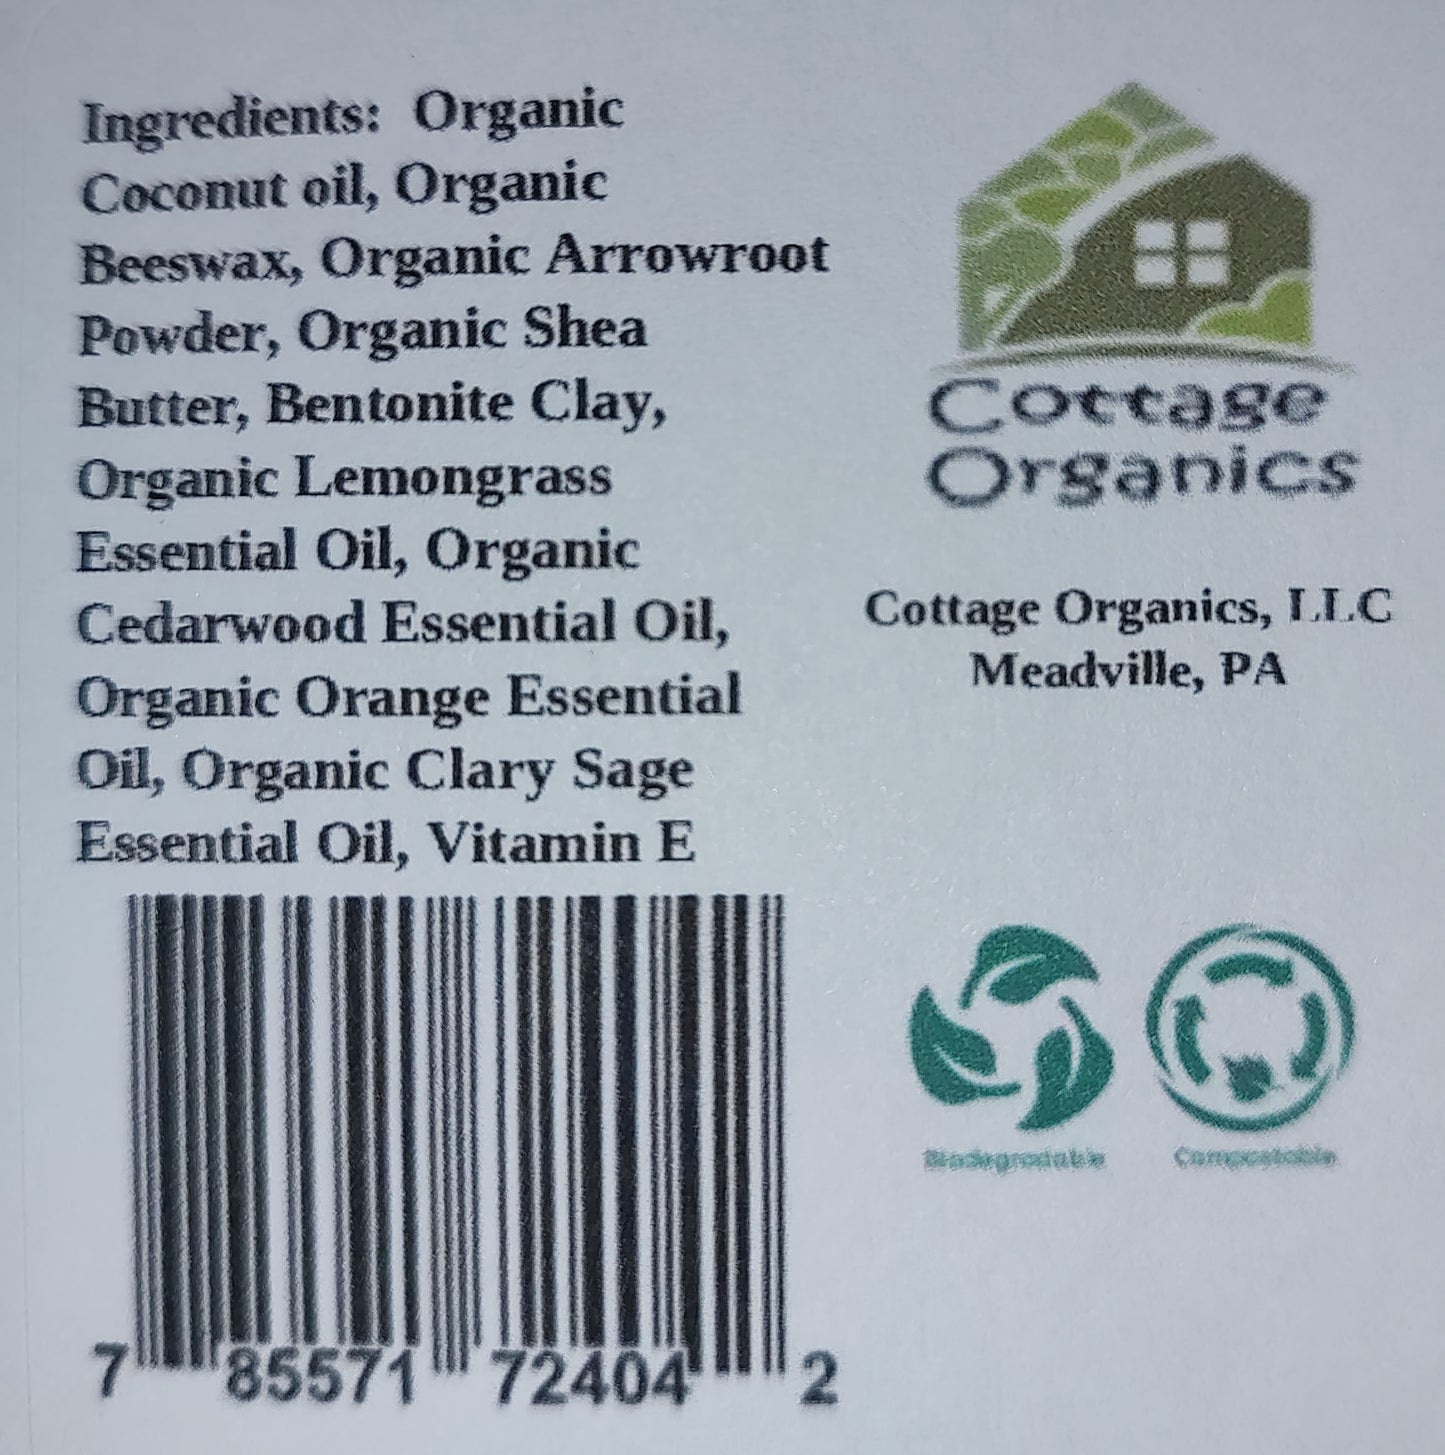 Organic Citrus Cedar Sage Deodorant